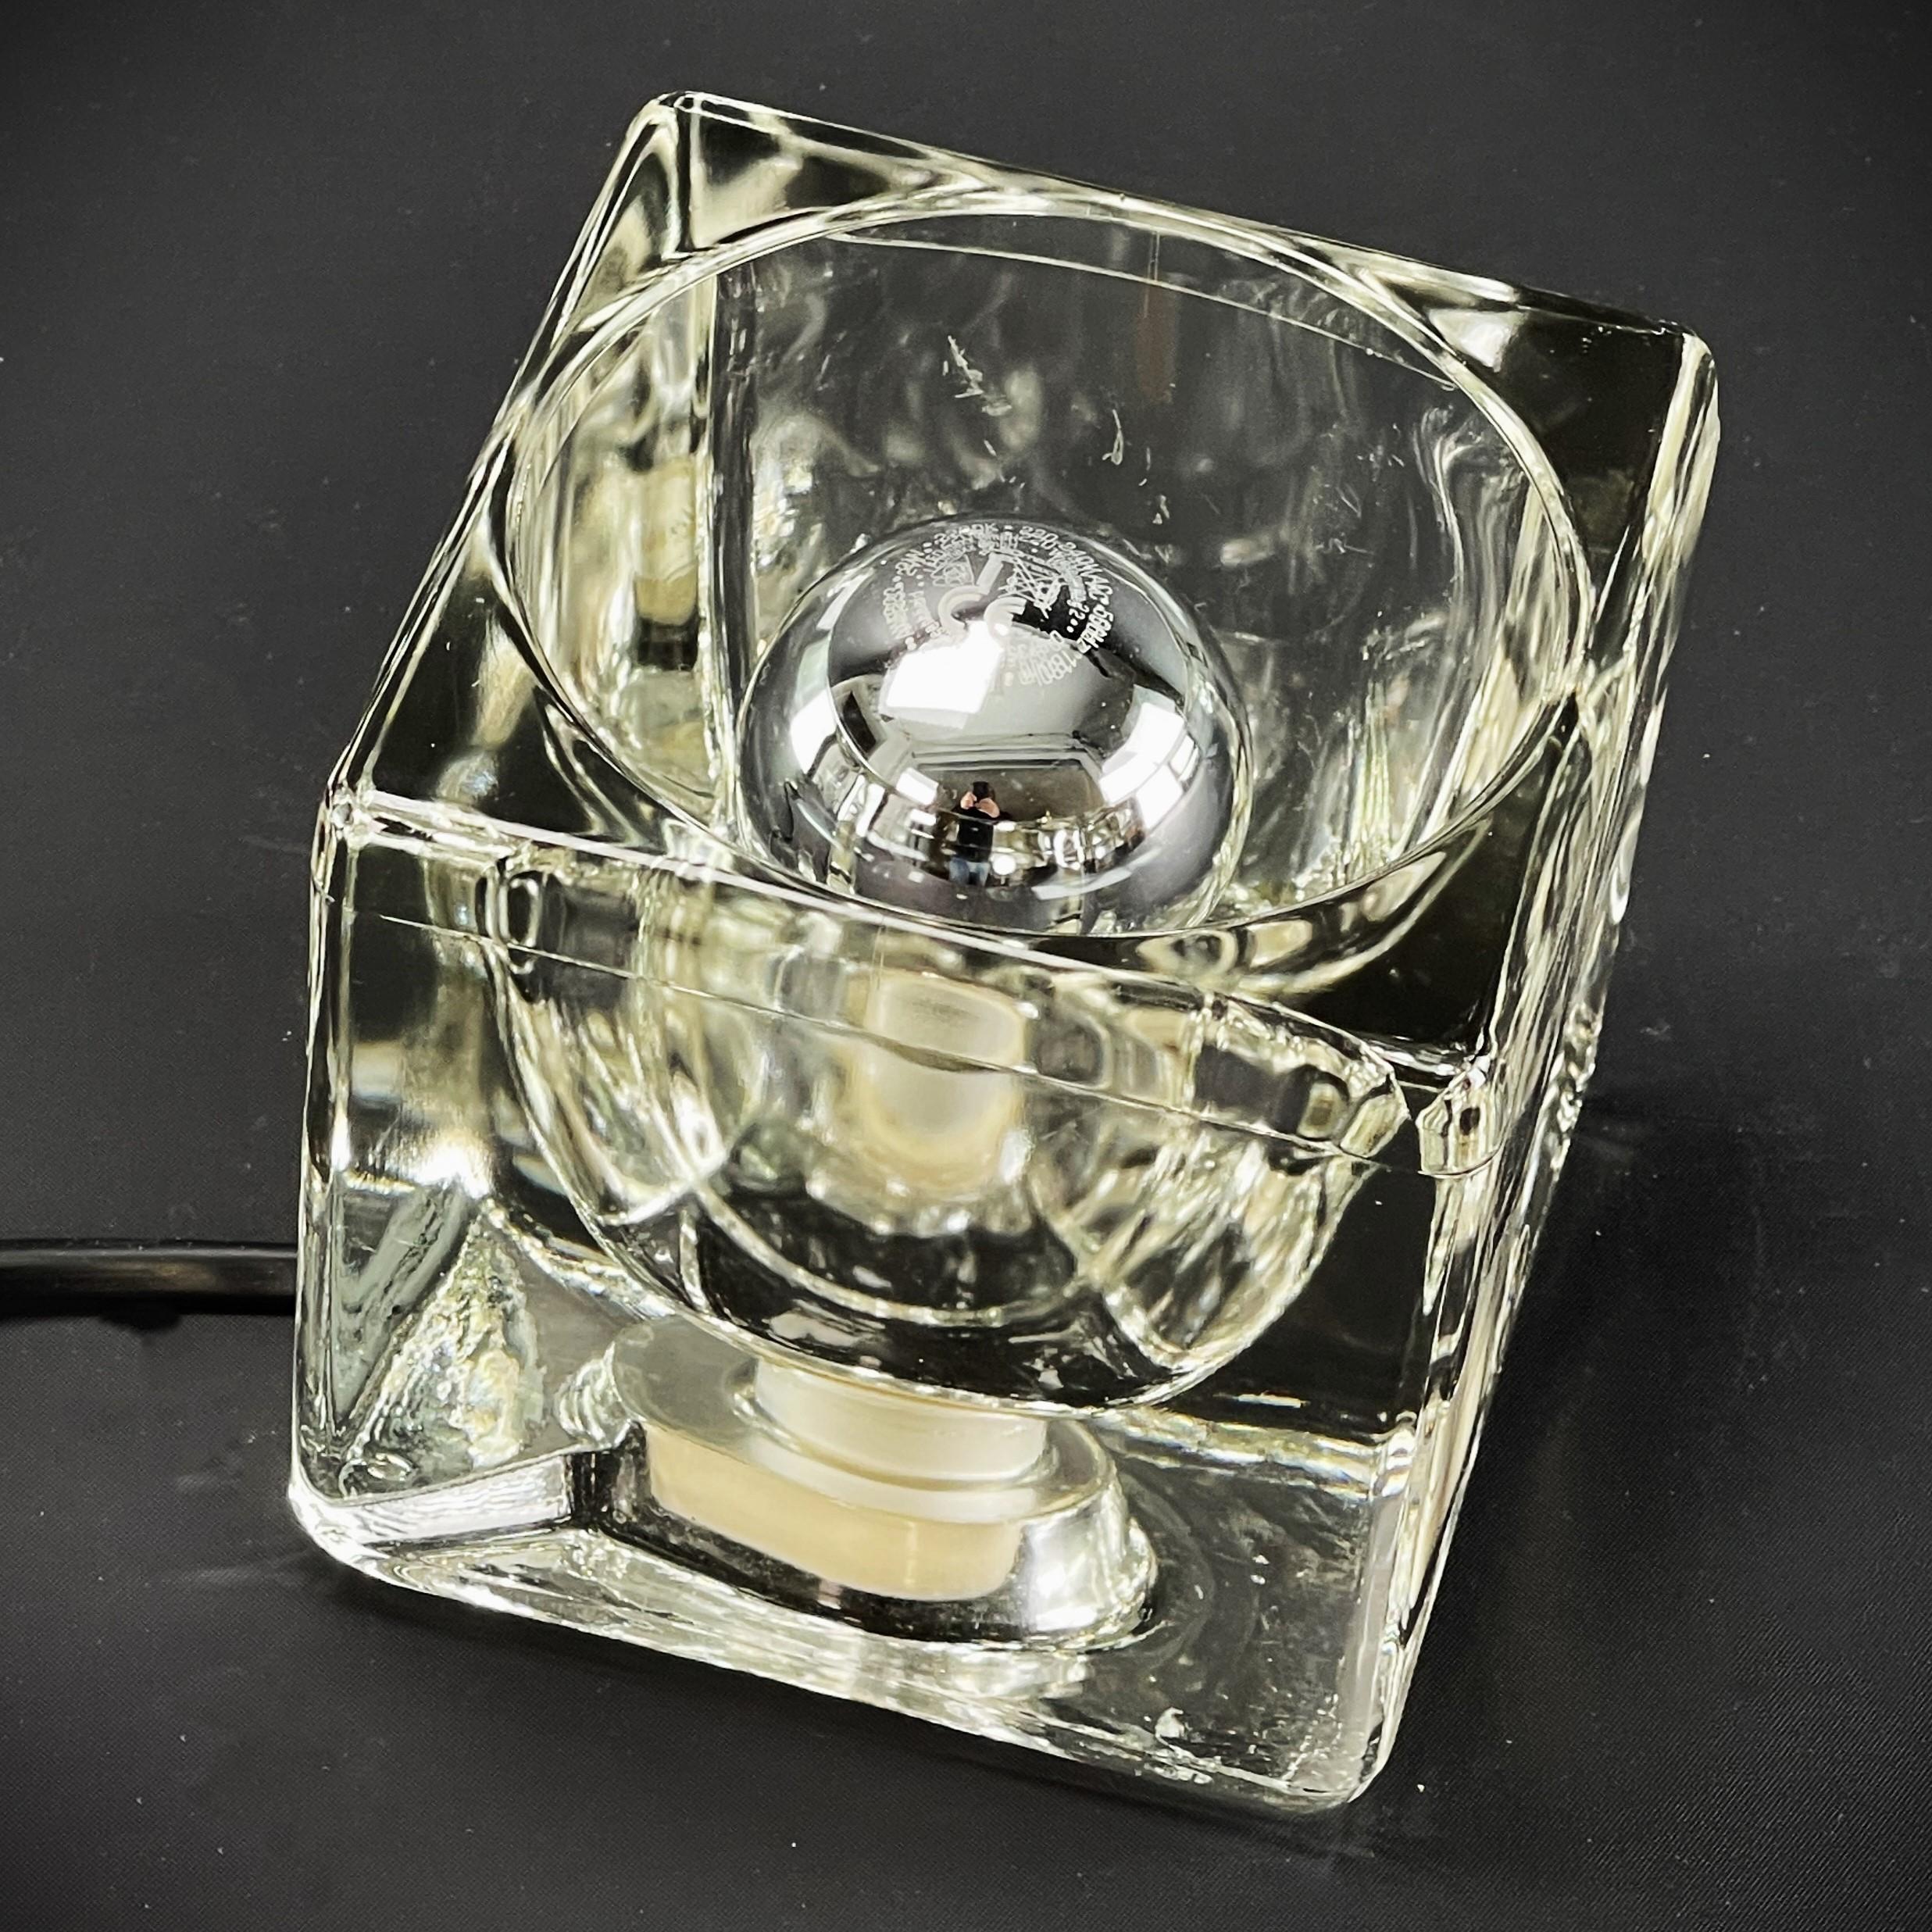 Schreibtischlampe aus Eisglas von Peill & Putzler,  1970s.

Die Designerlampe ist ein echter Klassiker aus den 70er Jahren. Die Lounge-Lampe von Peill & Putzler ist aus hochwertigem Glas in Form eines Eiswürfels gefertigt. Die klaren Glaswürfel